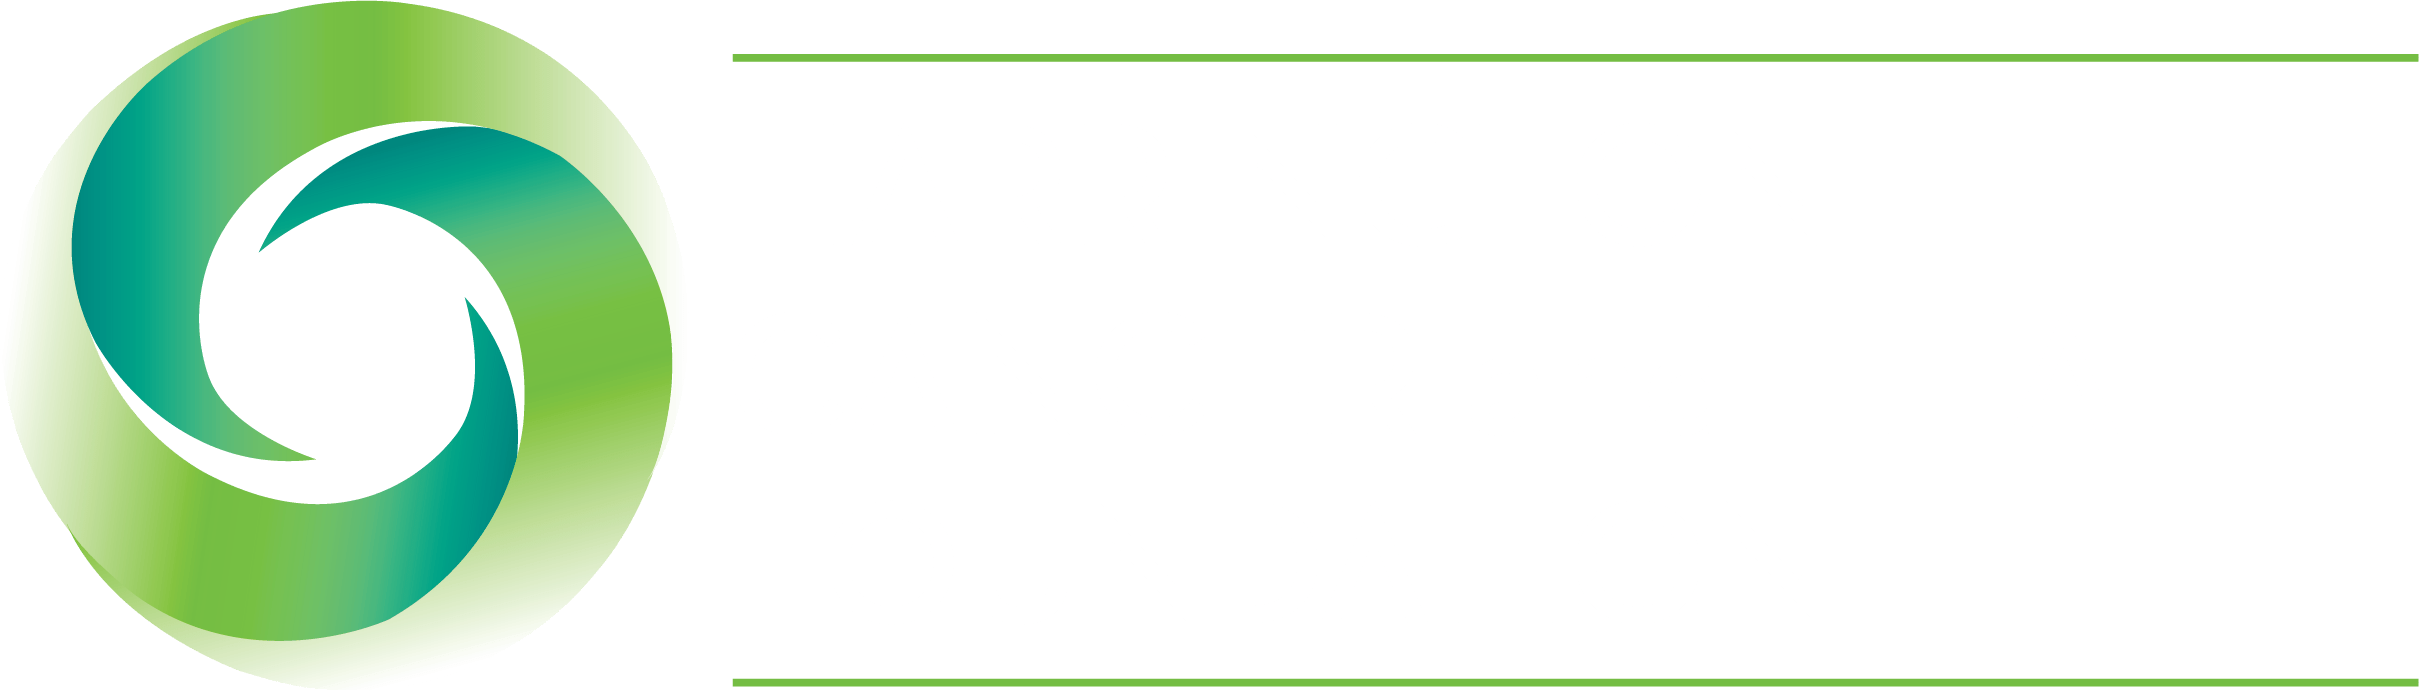 Harrington Cancer and Health Foundation